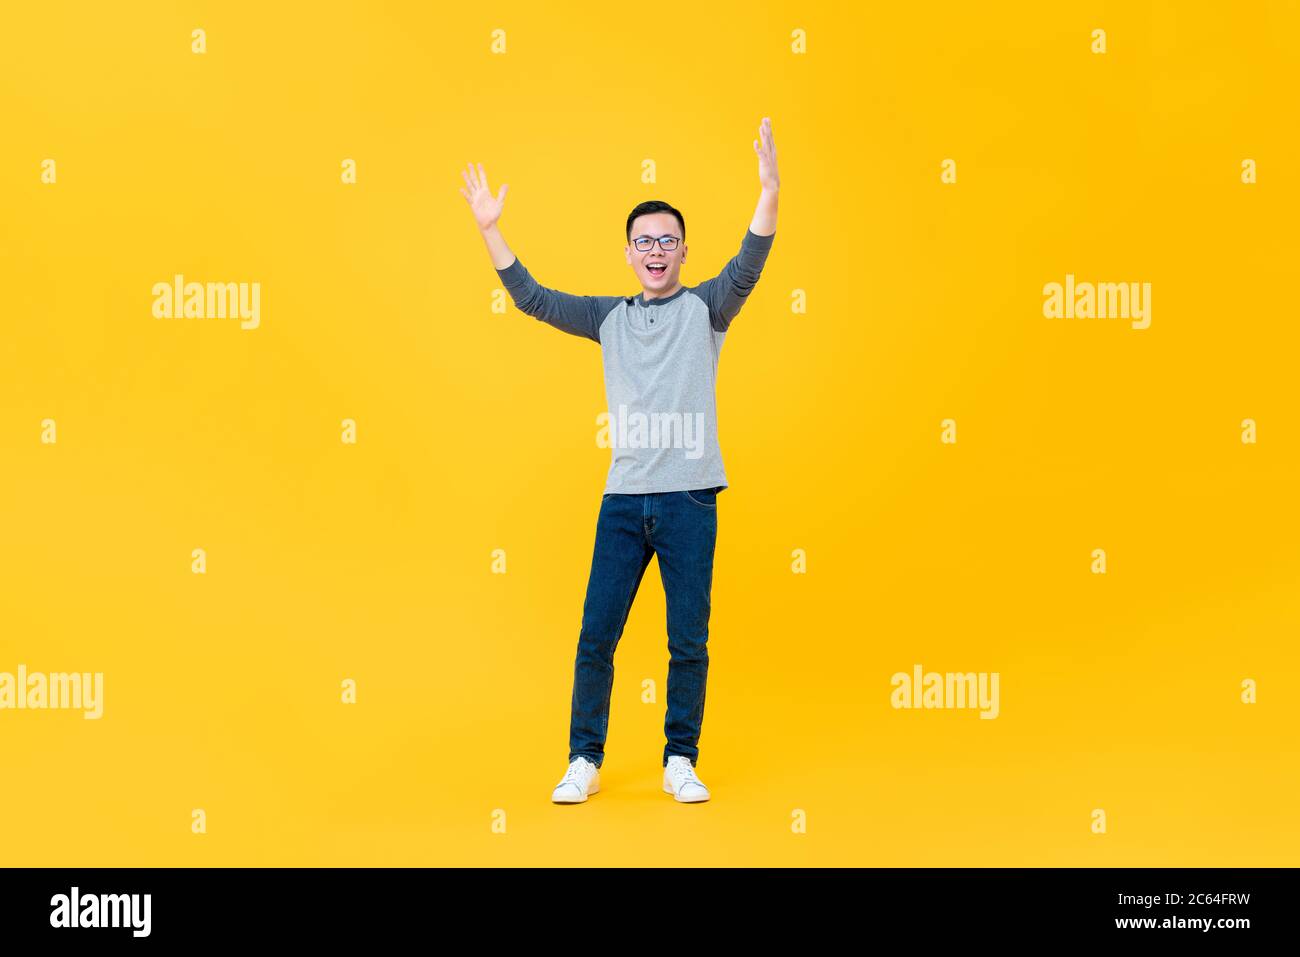 Ritratto a corpo pieno di allegro giovane asiatico che solleva entrambe le braccia in aria isolato su sfondo giallo Foto Stock